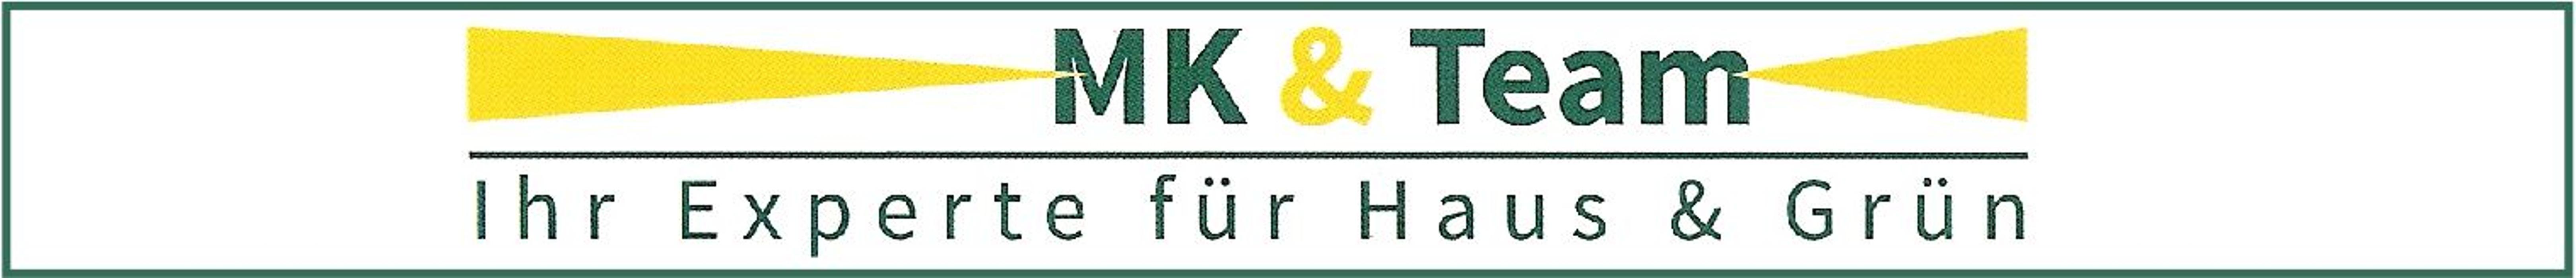 MK & Team - Ihr Experte für Haus & Grün - Fliesenverlegung